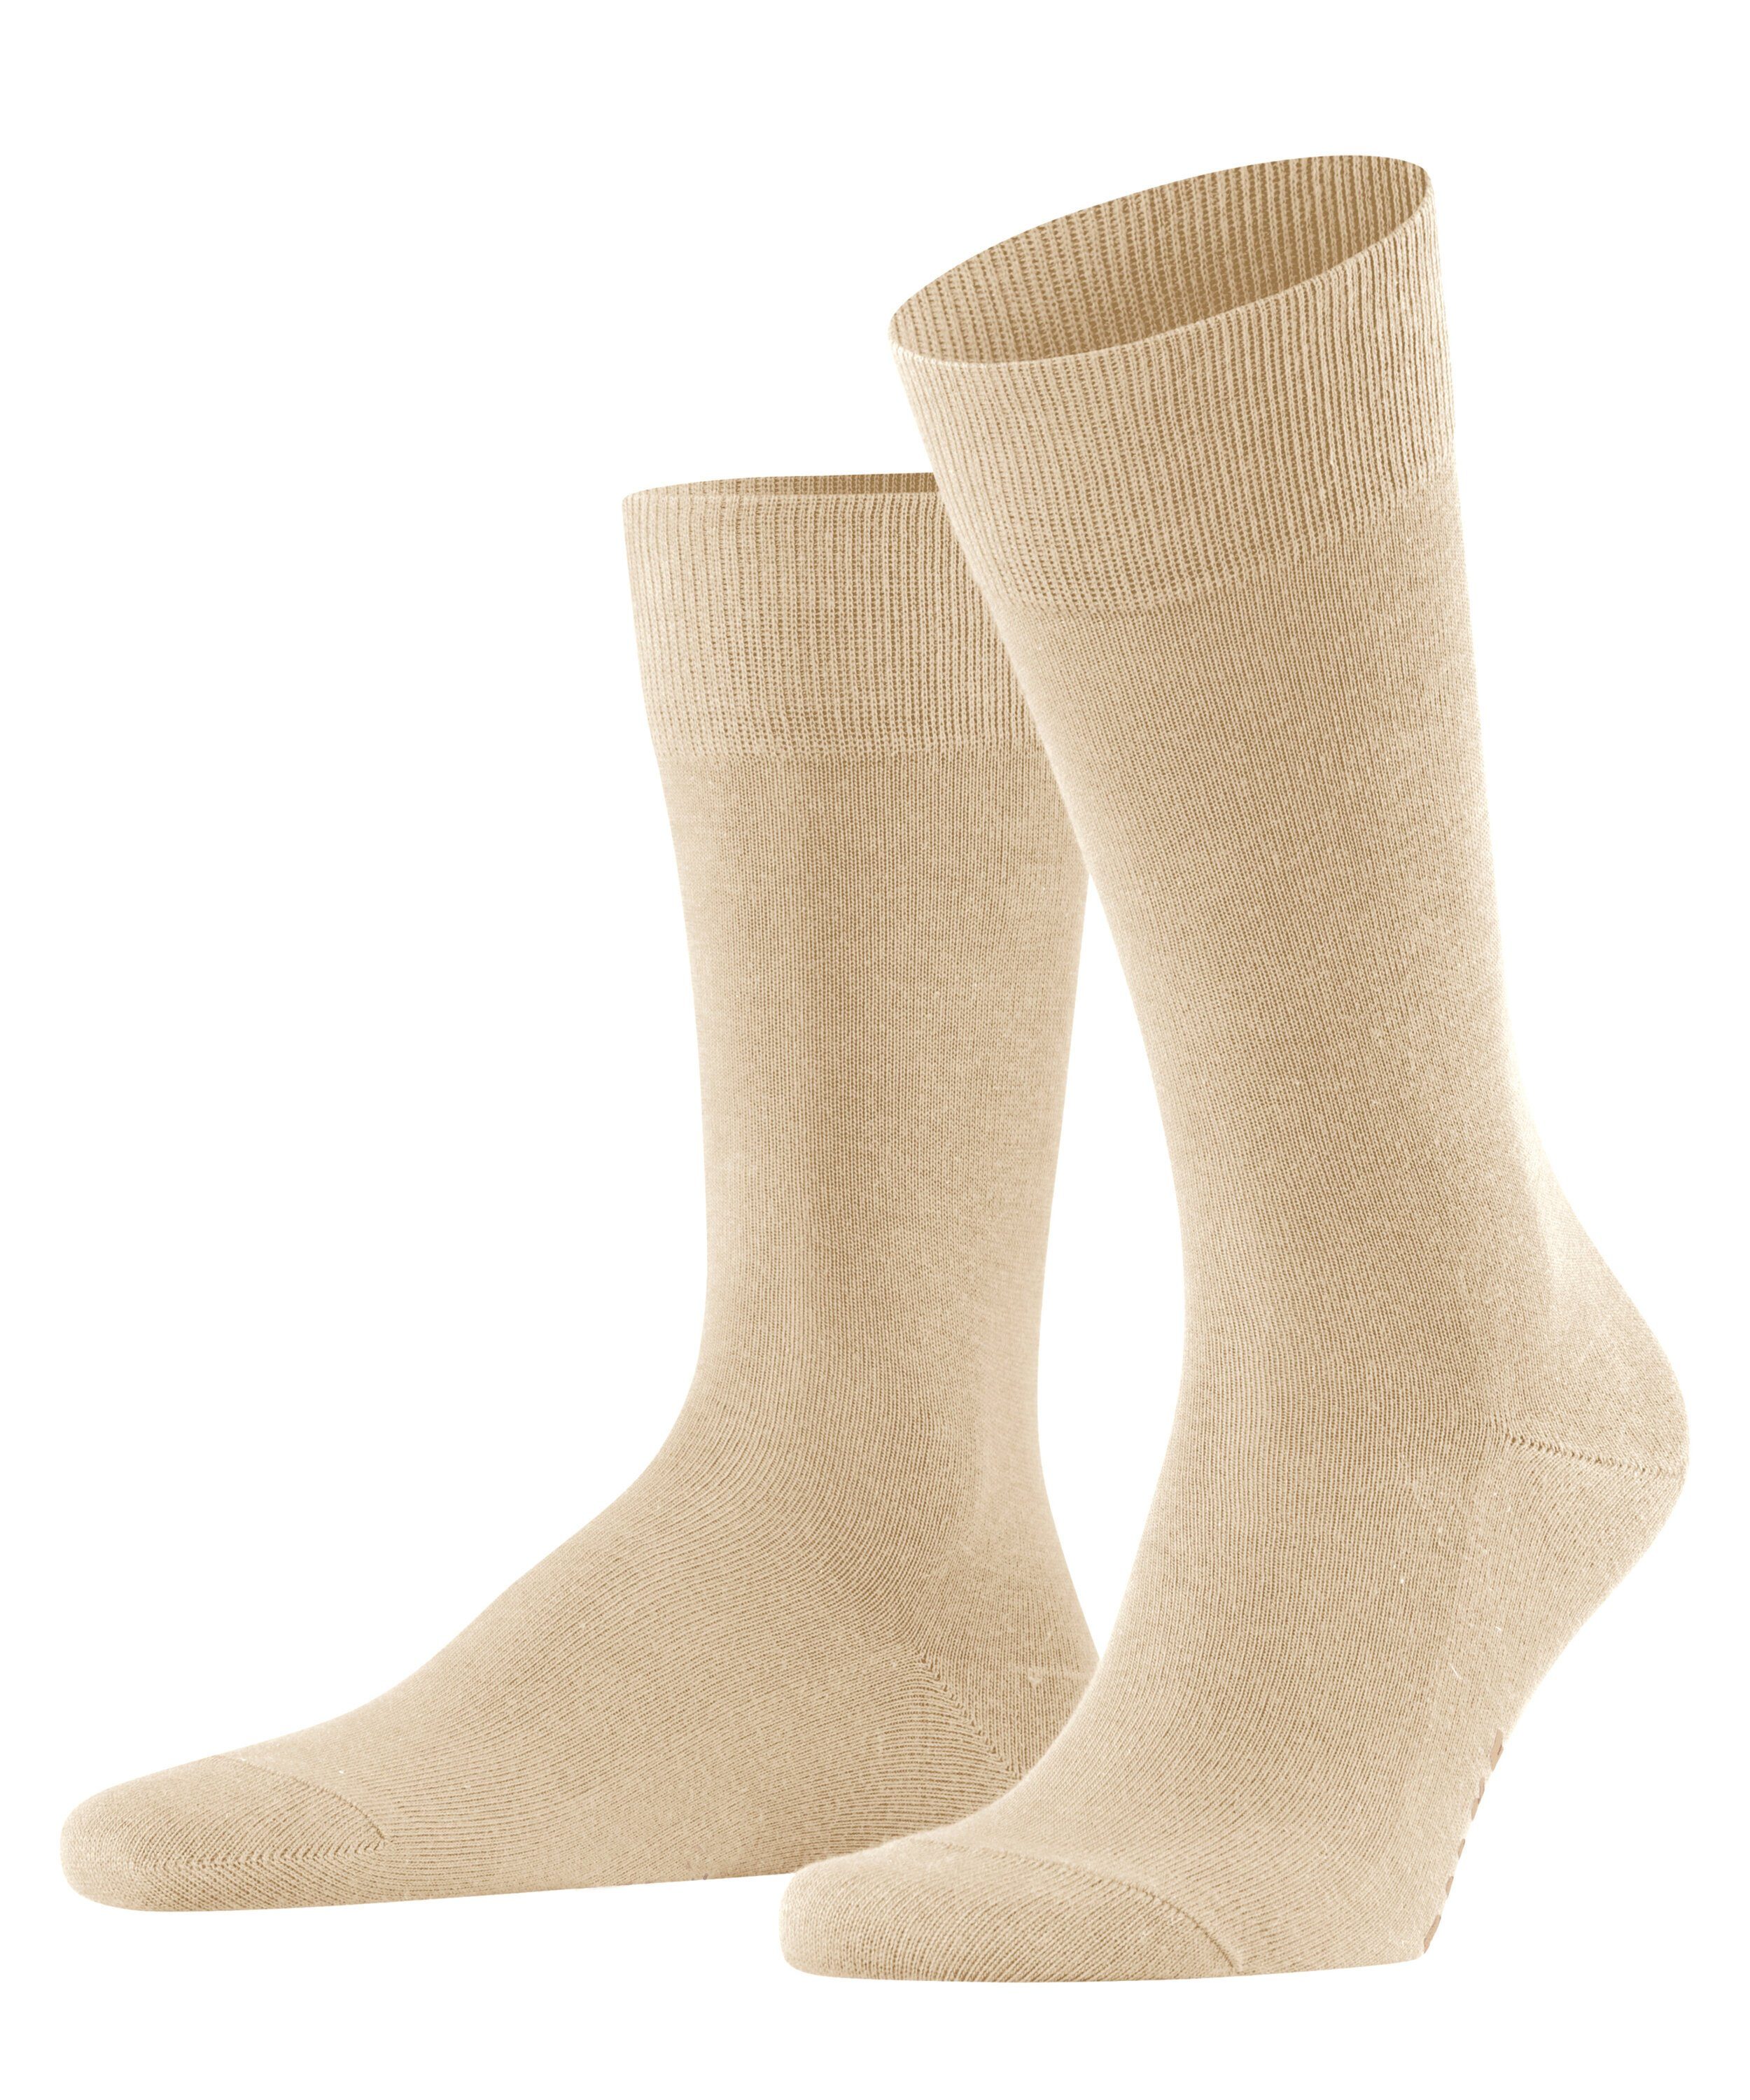 FALKE Socken (4320) sand (1-Paar) Family